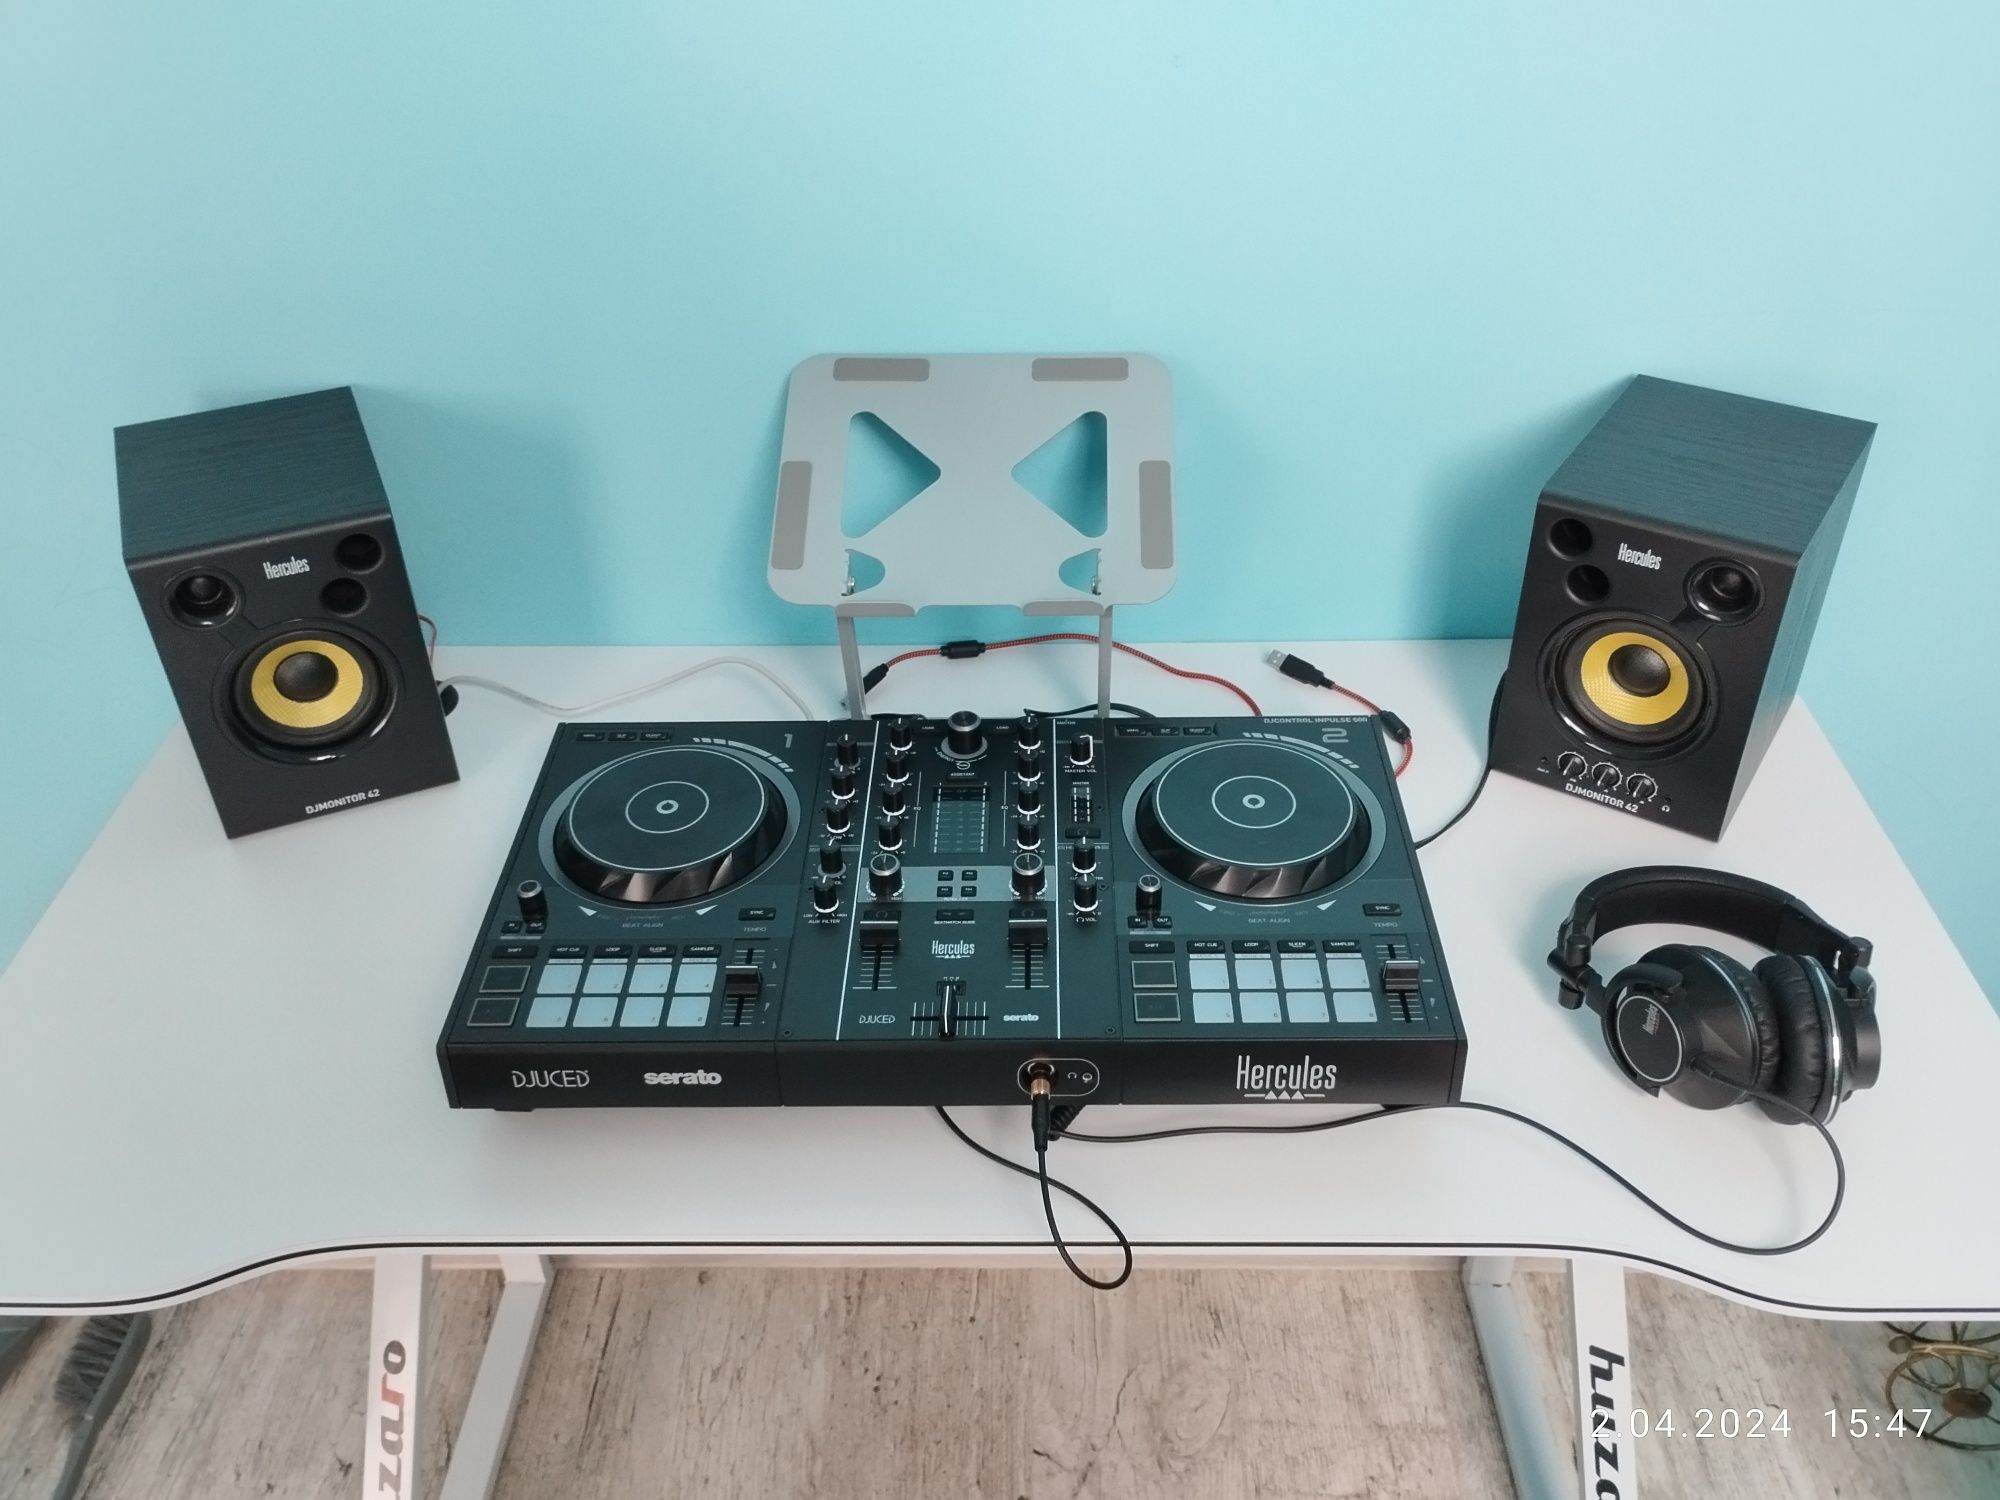 Zestaw Hercules - DJcontrol Inpulse 500 + DJmonitor 42 + HDP DJ60